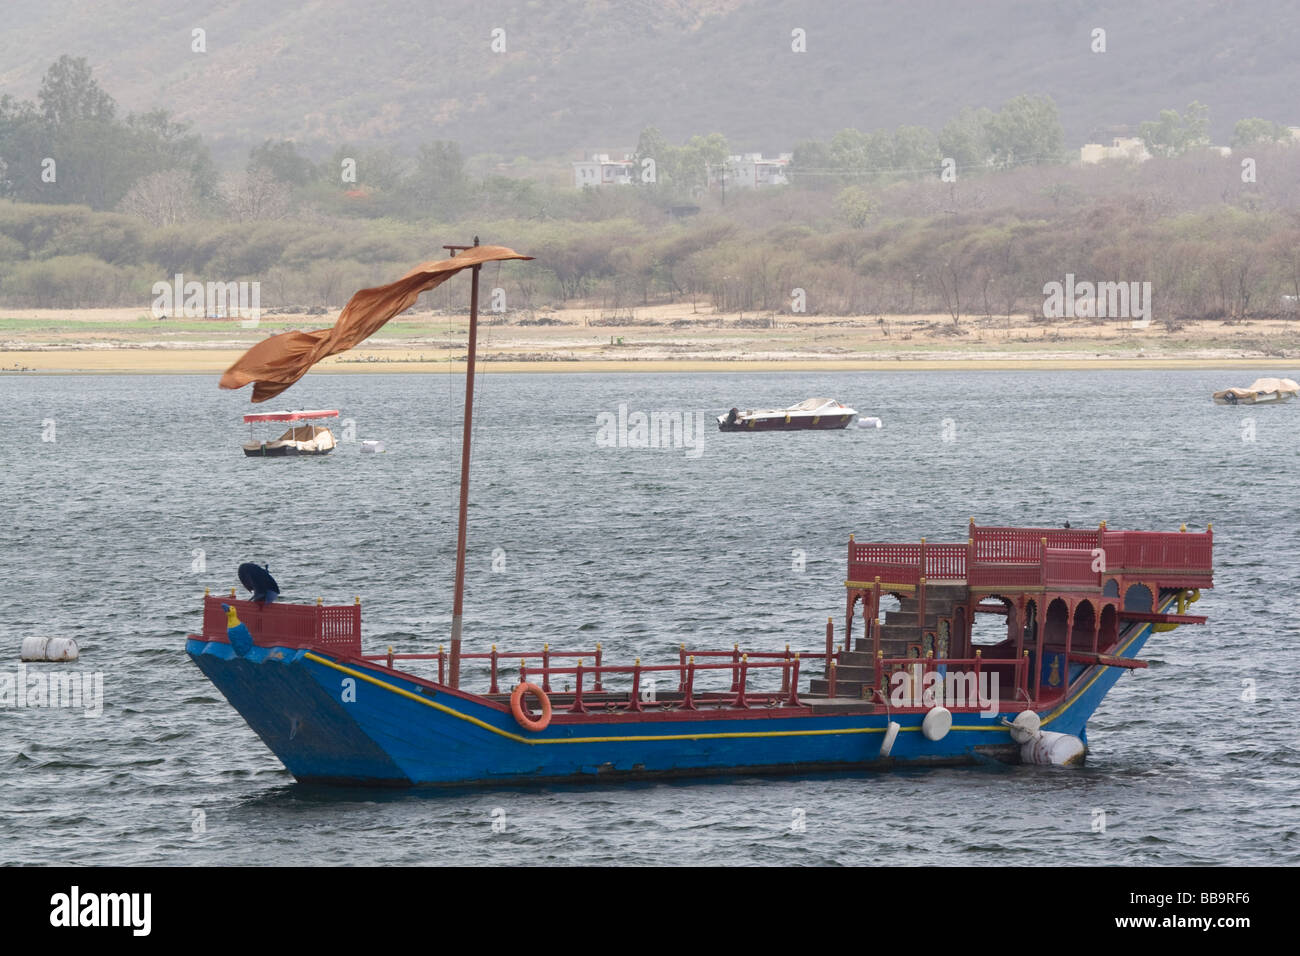 Inde Rajasthan Udaipur un tour de bateau sur le lac Pichola Rajasthan traditionnel voile Banque D'Images